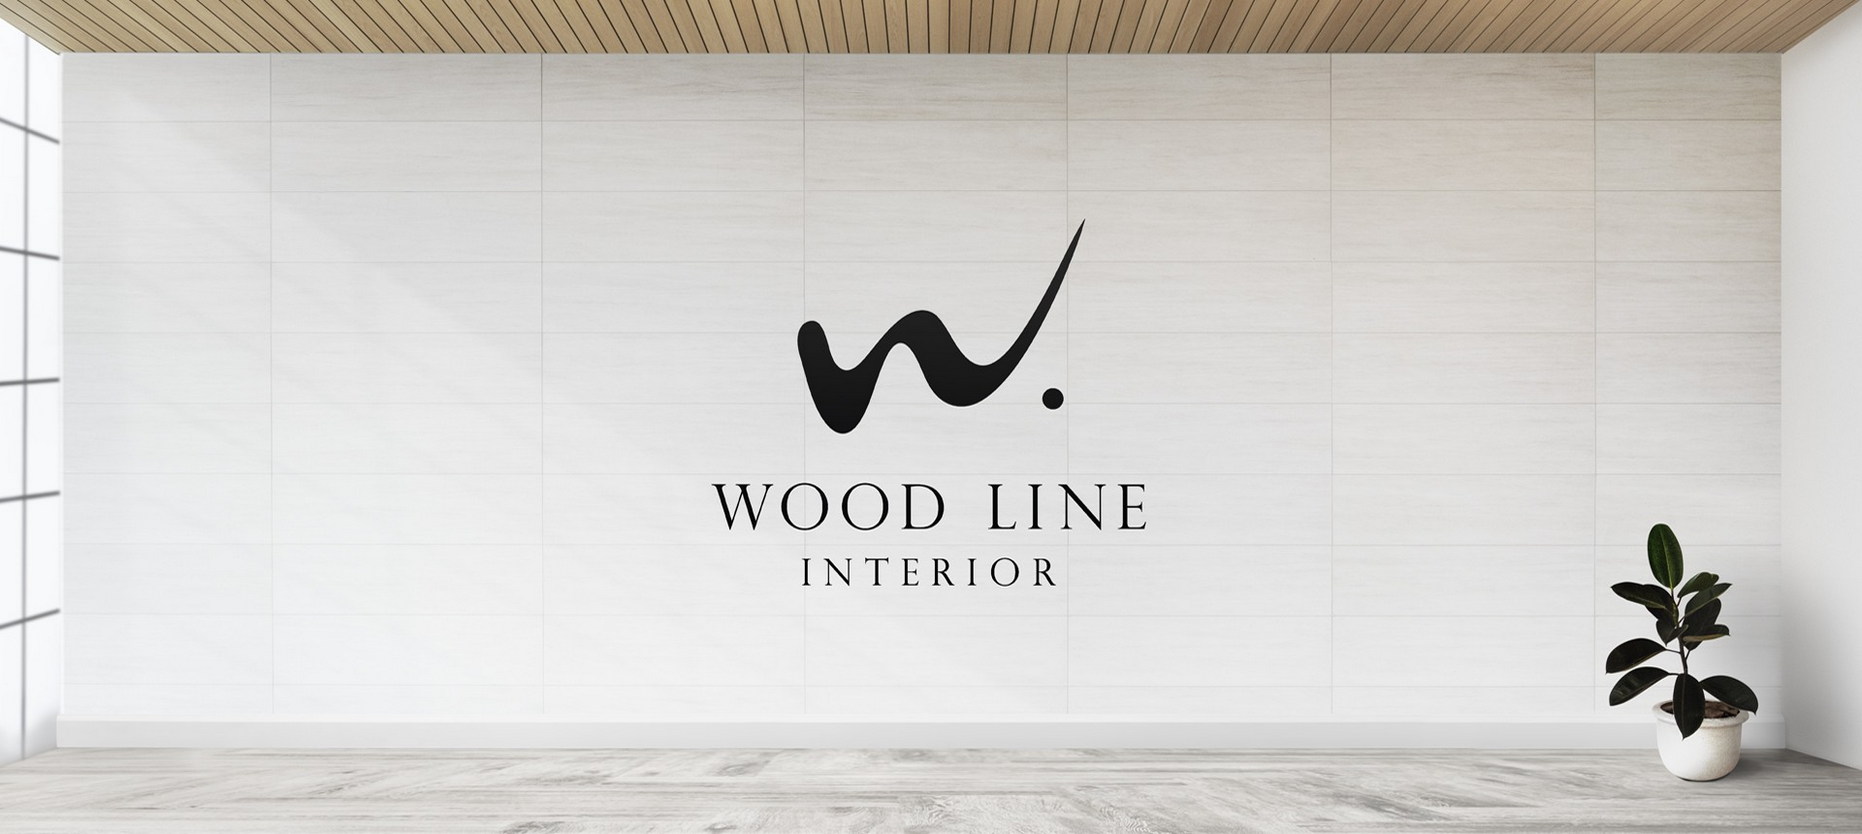 Фото №7: Производитель мебели Wood Line Interior - Разработка логотипа и создание бренда в студии брендинга Rocketmen Agency